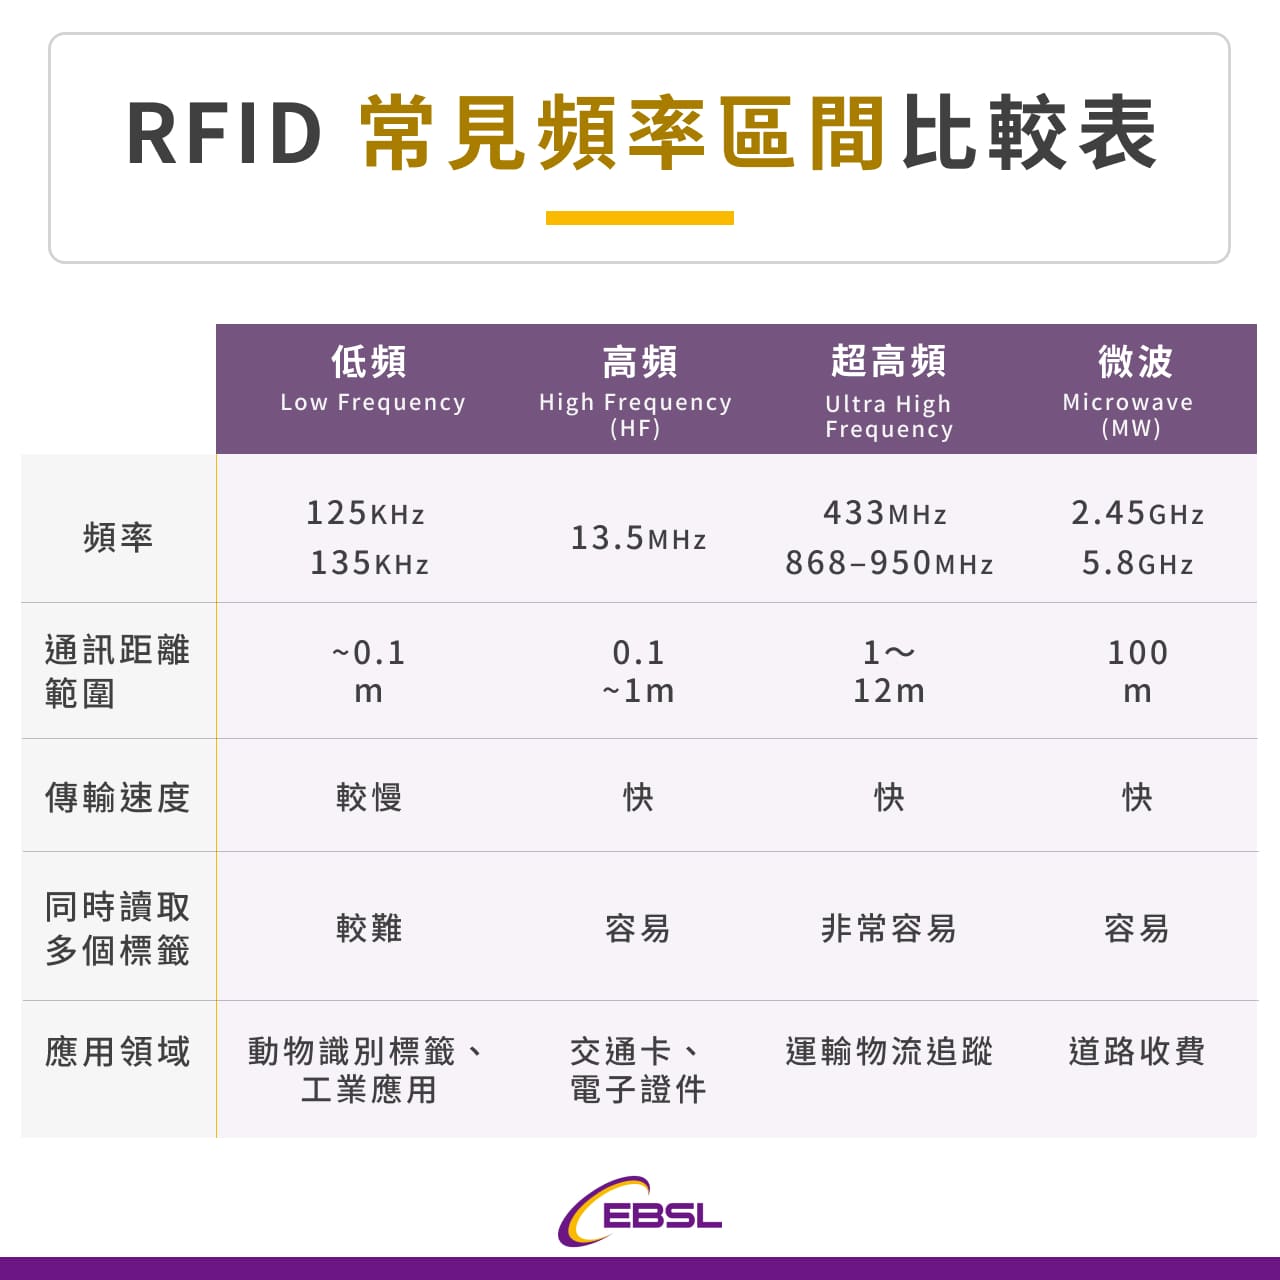 RFID 常見頻率區間比較表